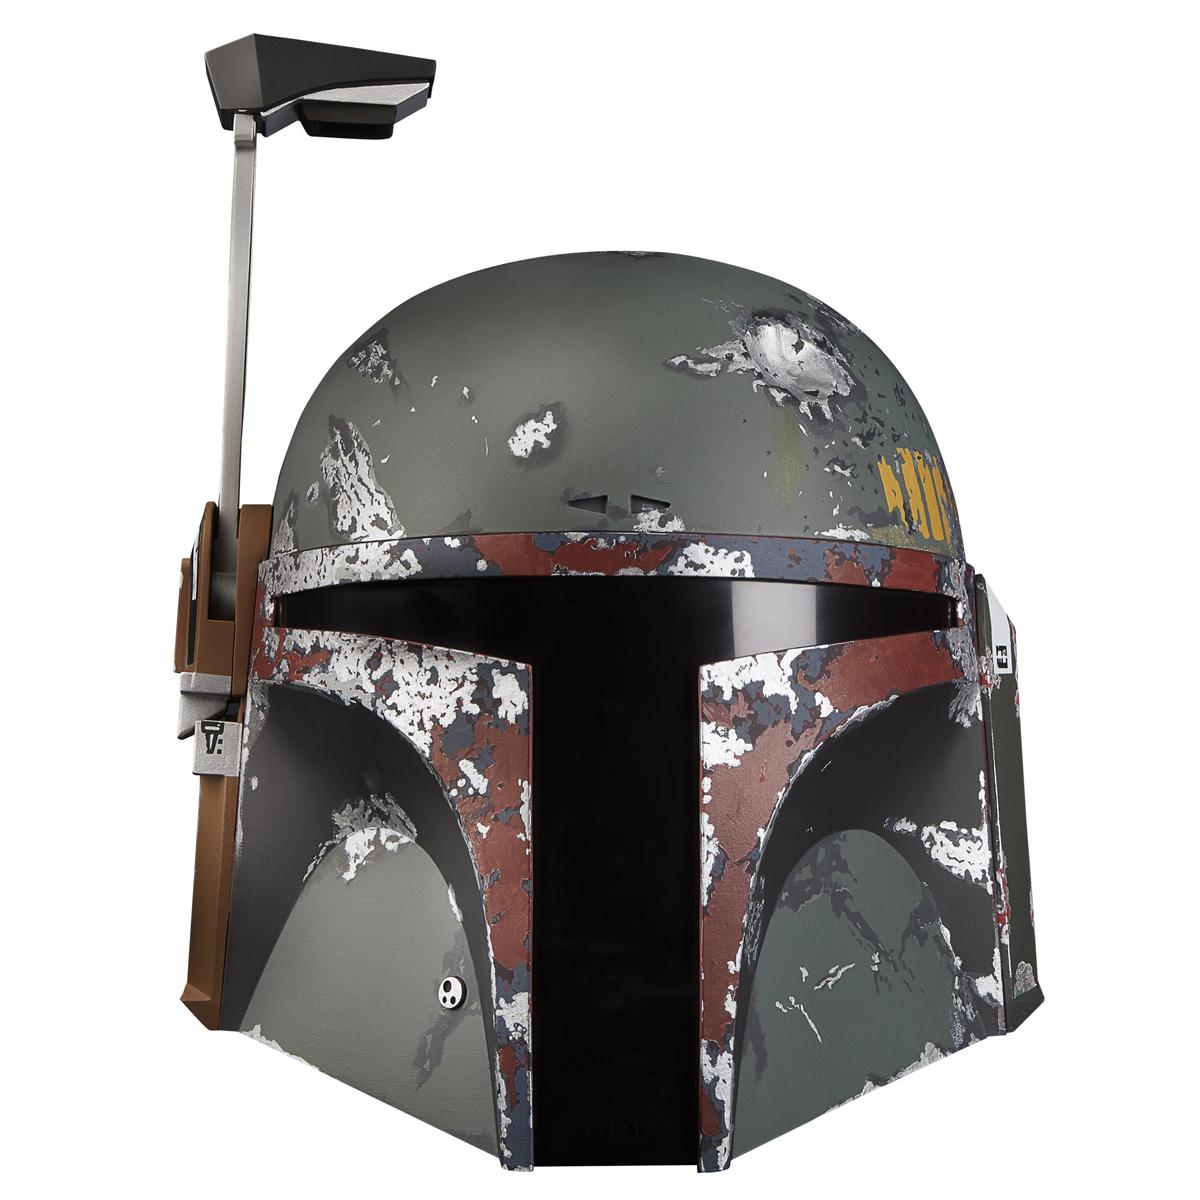 Star Wars The Black Series Boba Fett Premium Electronic Helmet for $98.31 Shipped